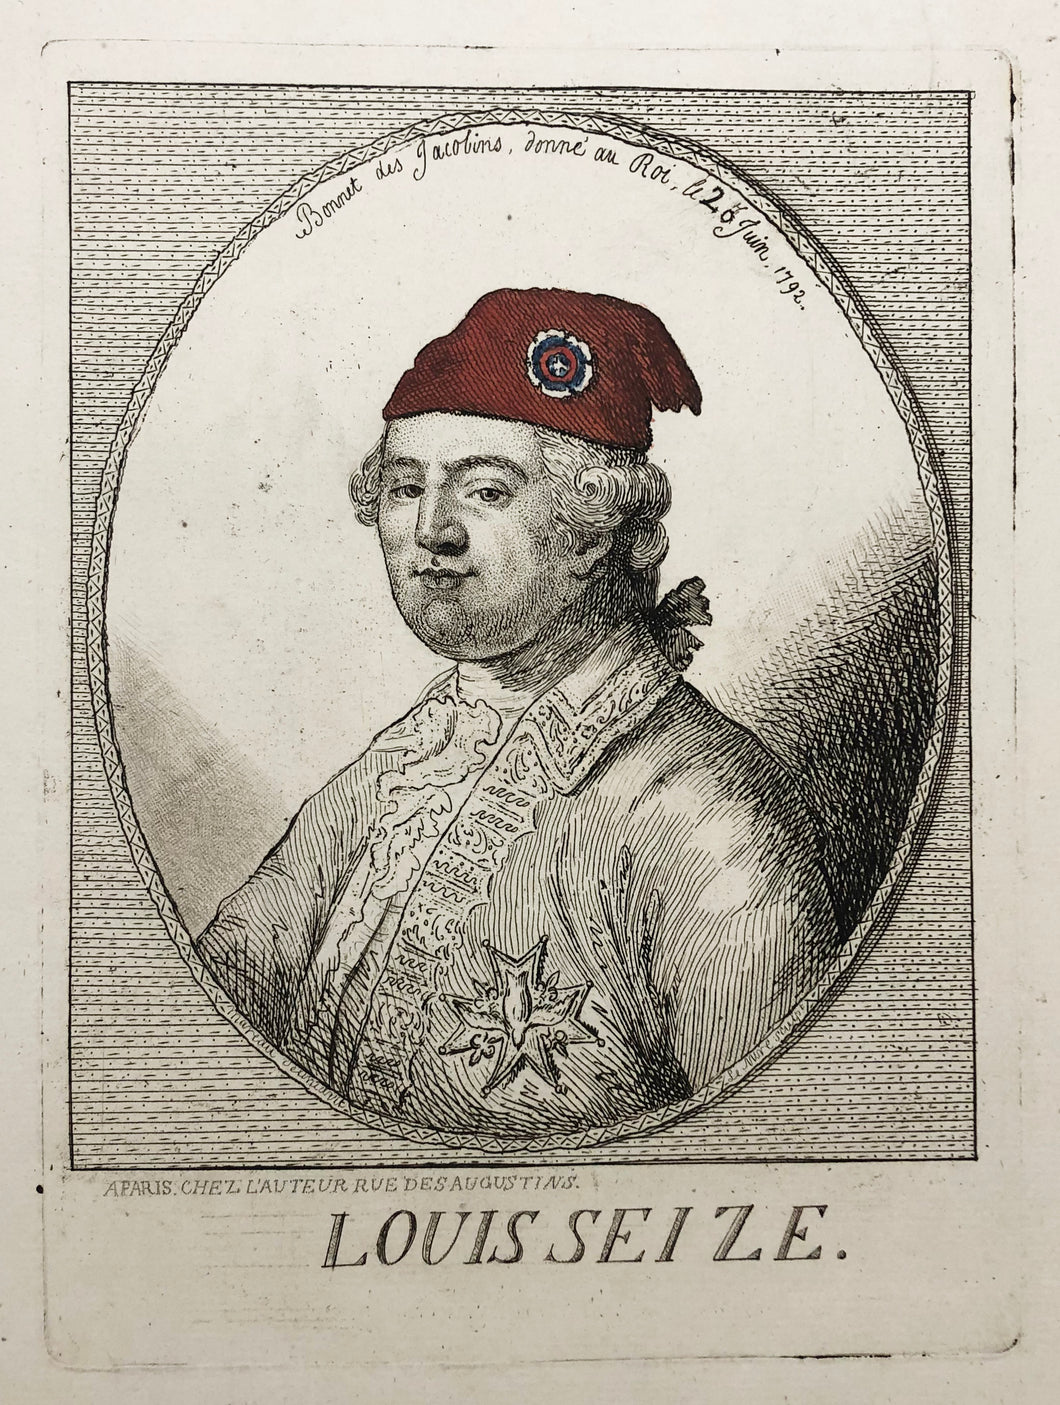 Louis Seize. Bonnet des Jacobins donné au Roi le 20 juin 1792.